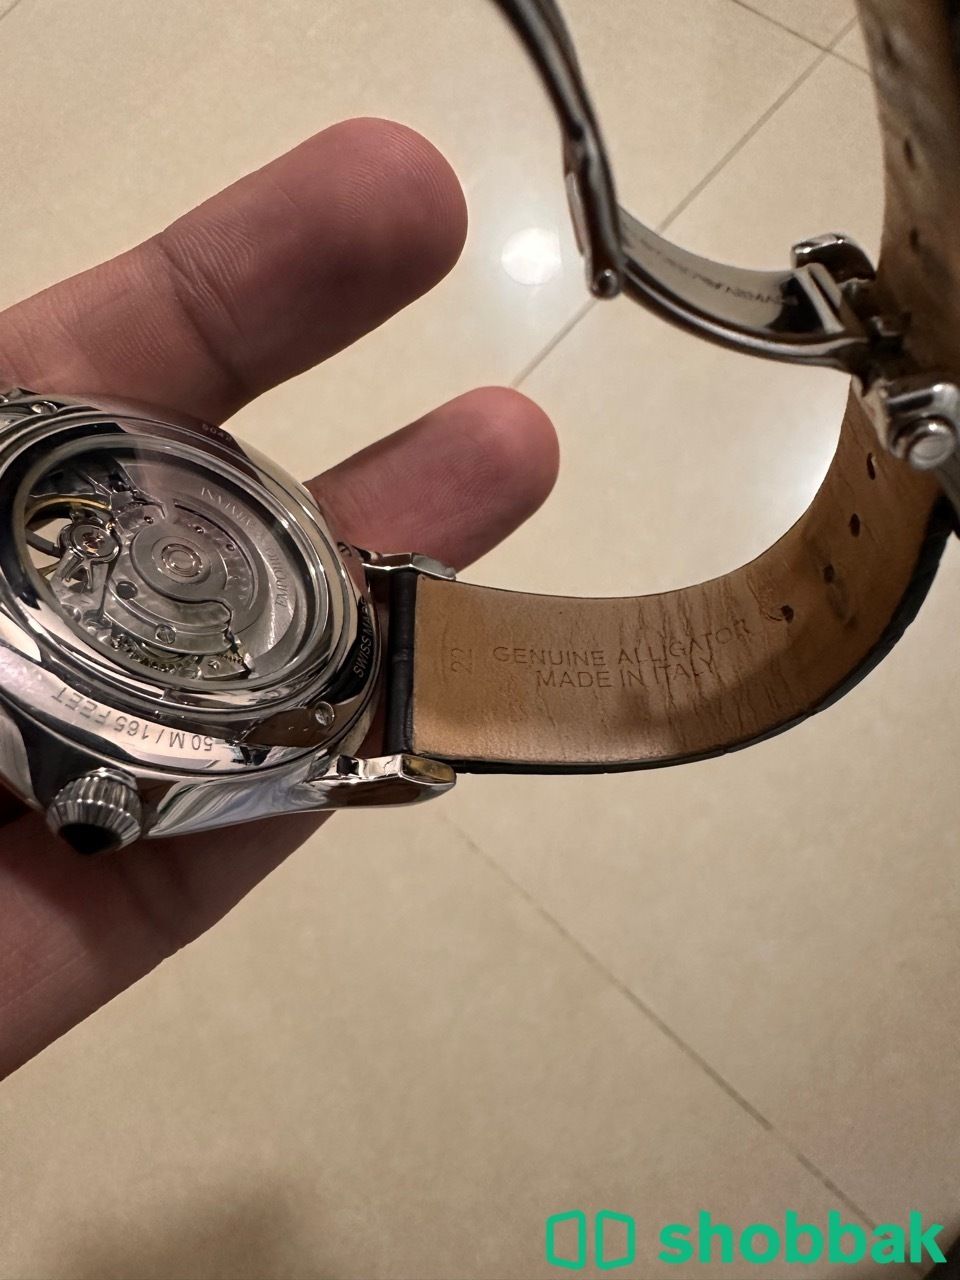 ساعة امبوريو ارماني اوتوماتيك - Emporio Armani Automatic Watch شباك السعودية